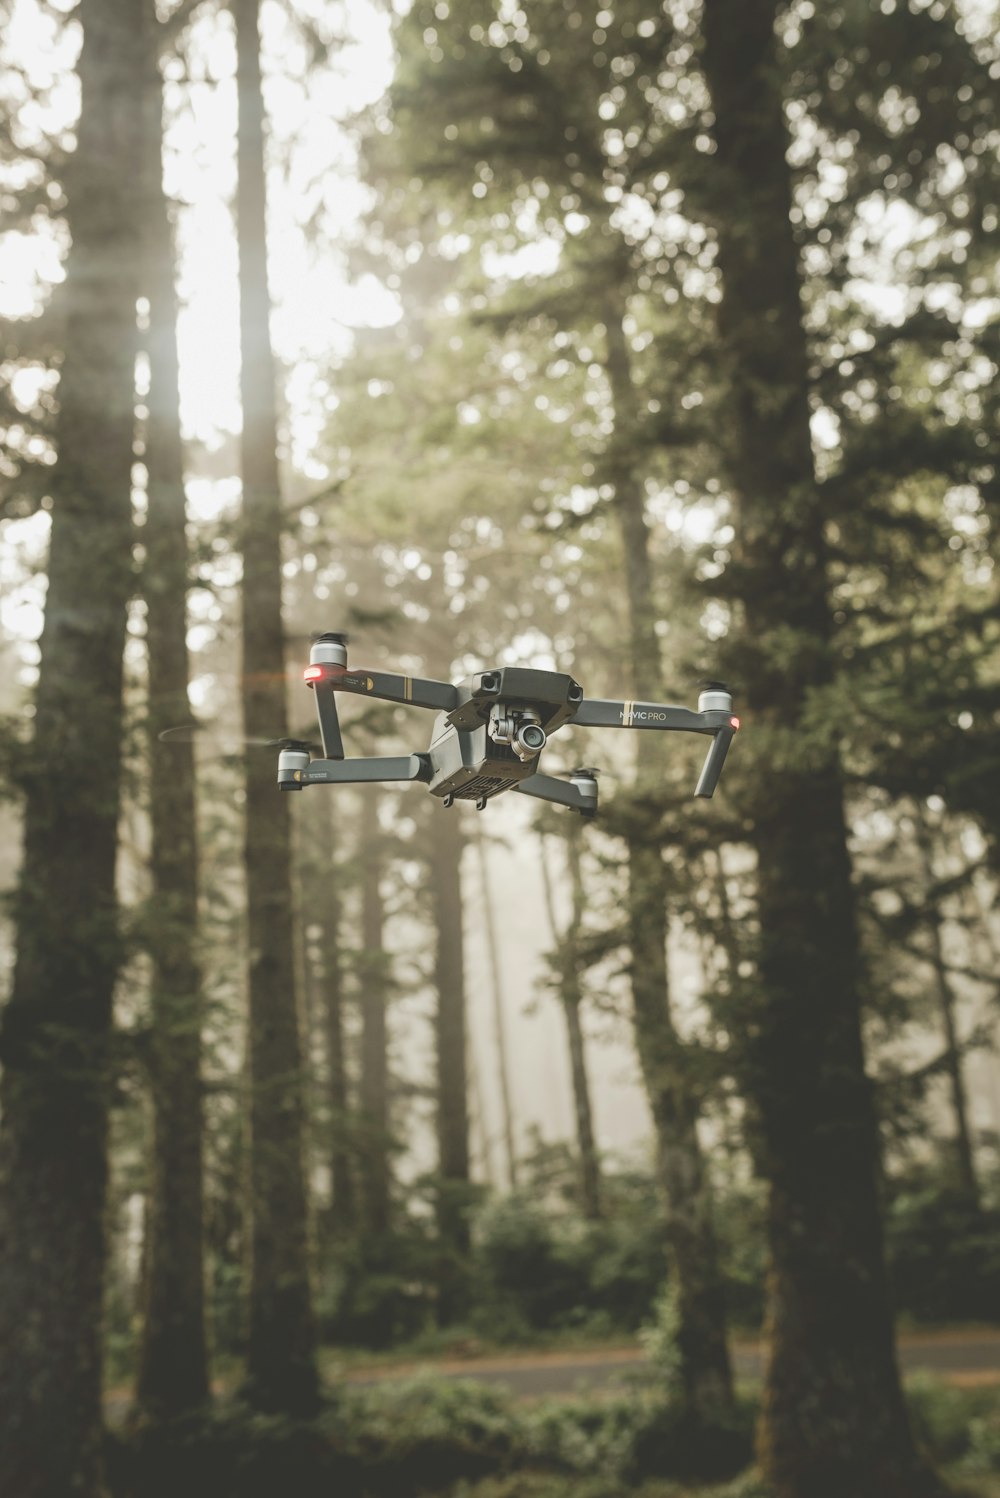 gris et noir DJI Mavic Pro quadricoptère drone sur le milieu de l’air près de la forêt pendant la journée